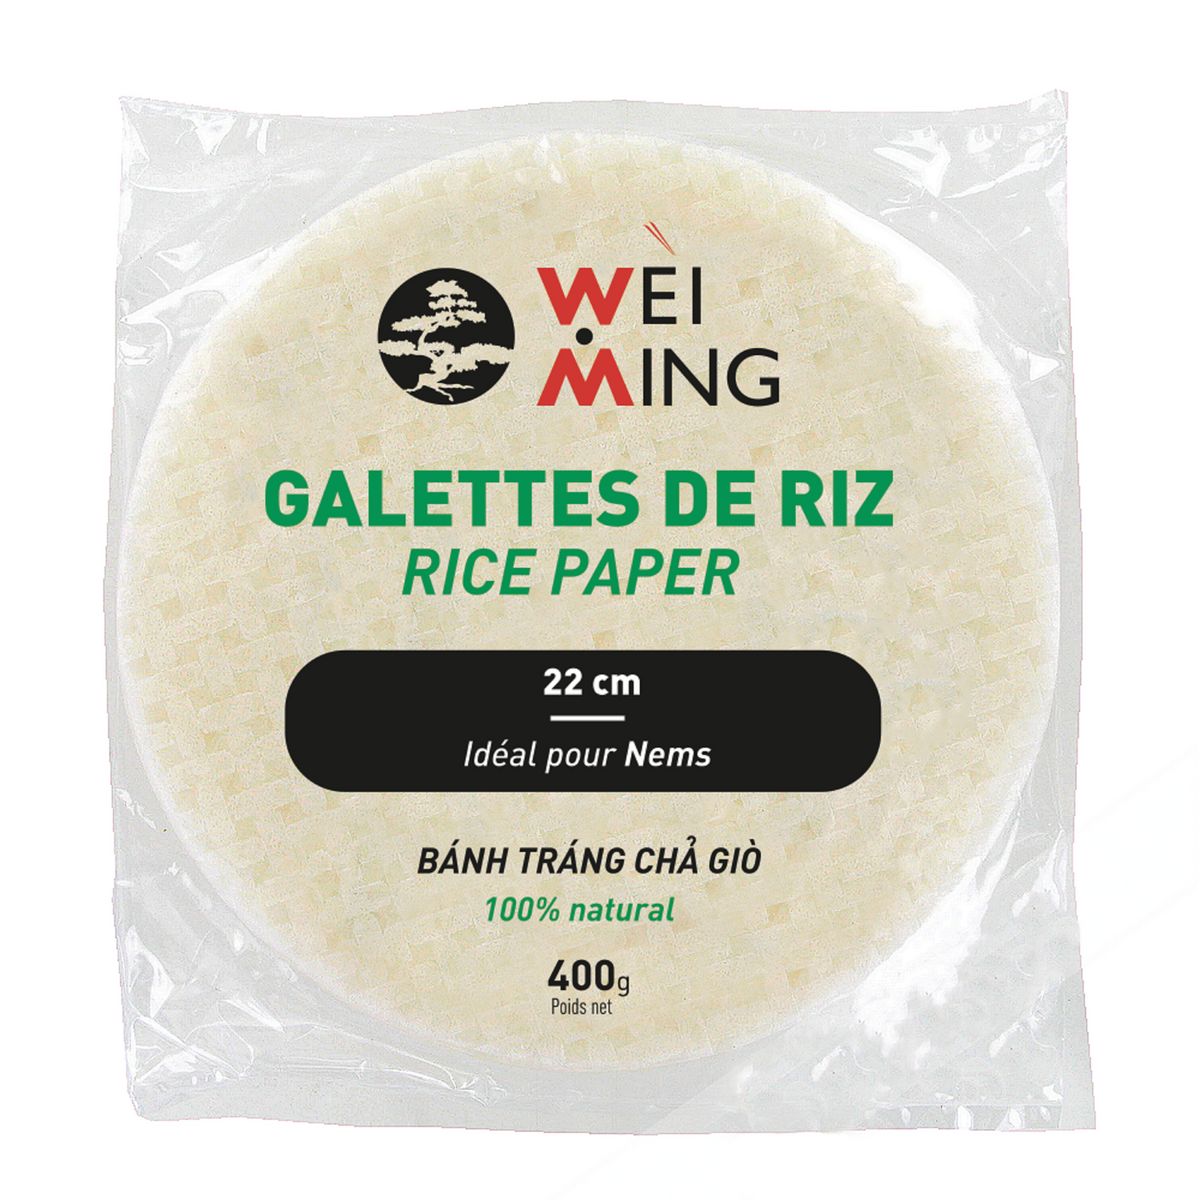 WEI MING Galettes de riz 22cm 400g